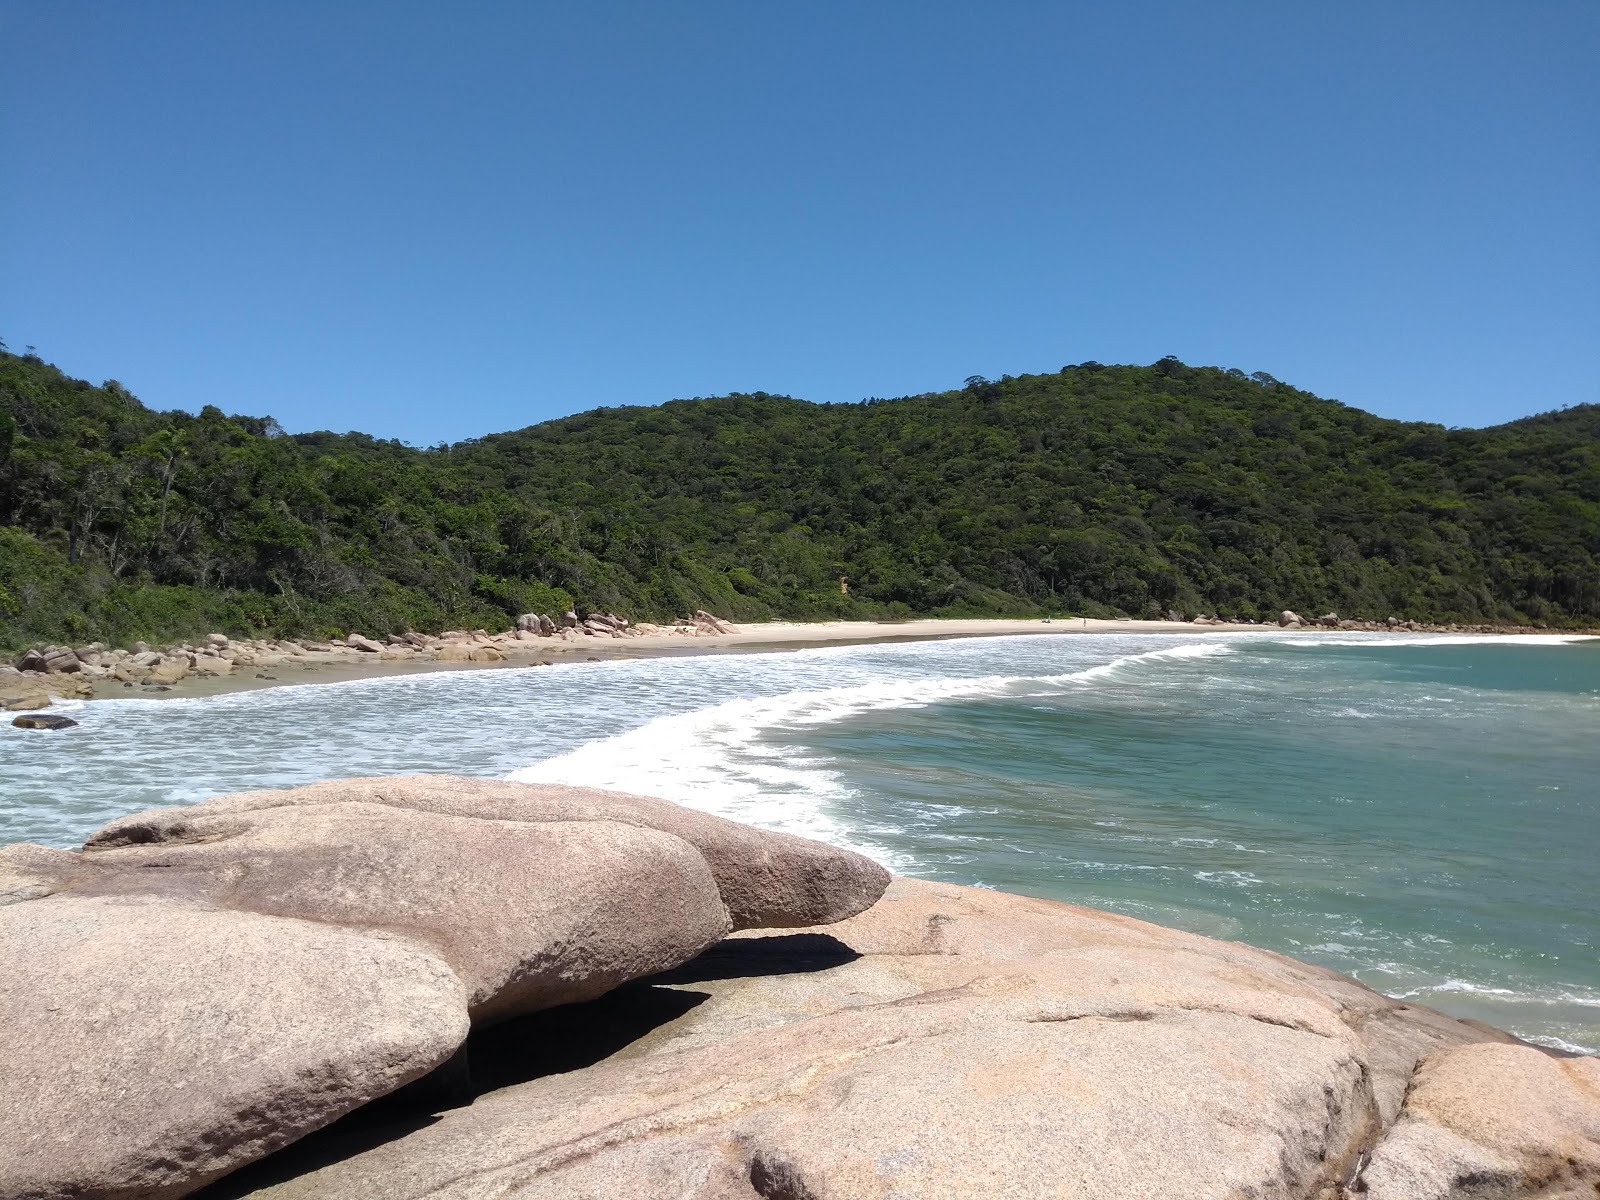 Valokuva Praia do Sissialista. pinnalla turkoosi puhdas vesi:n kanssa